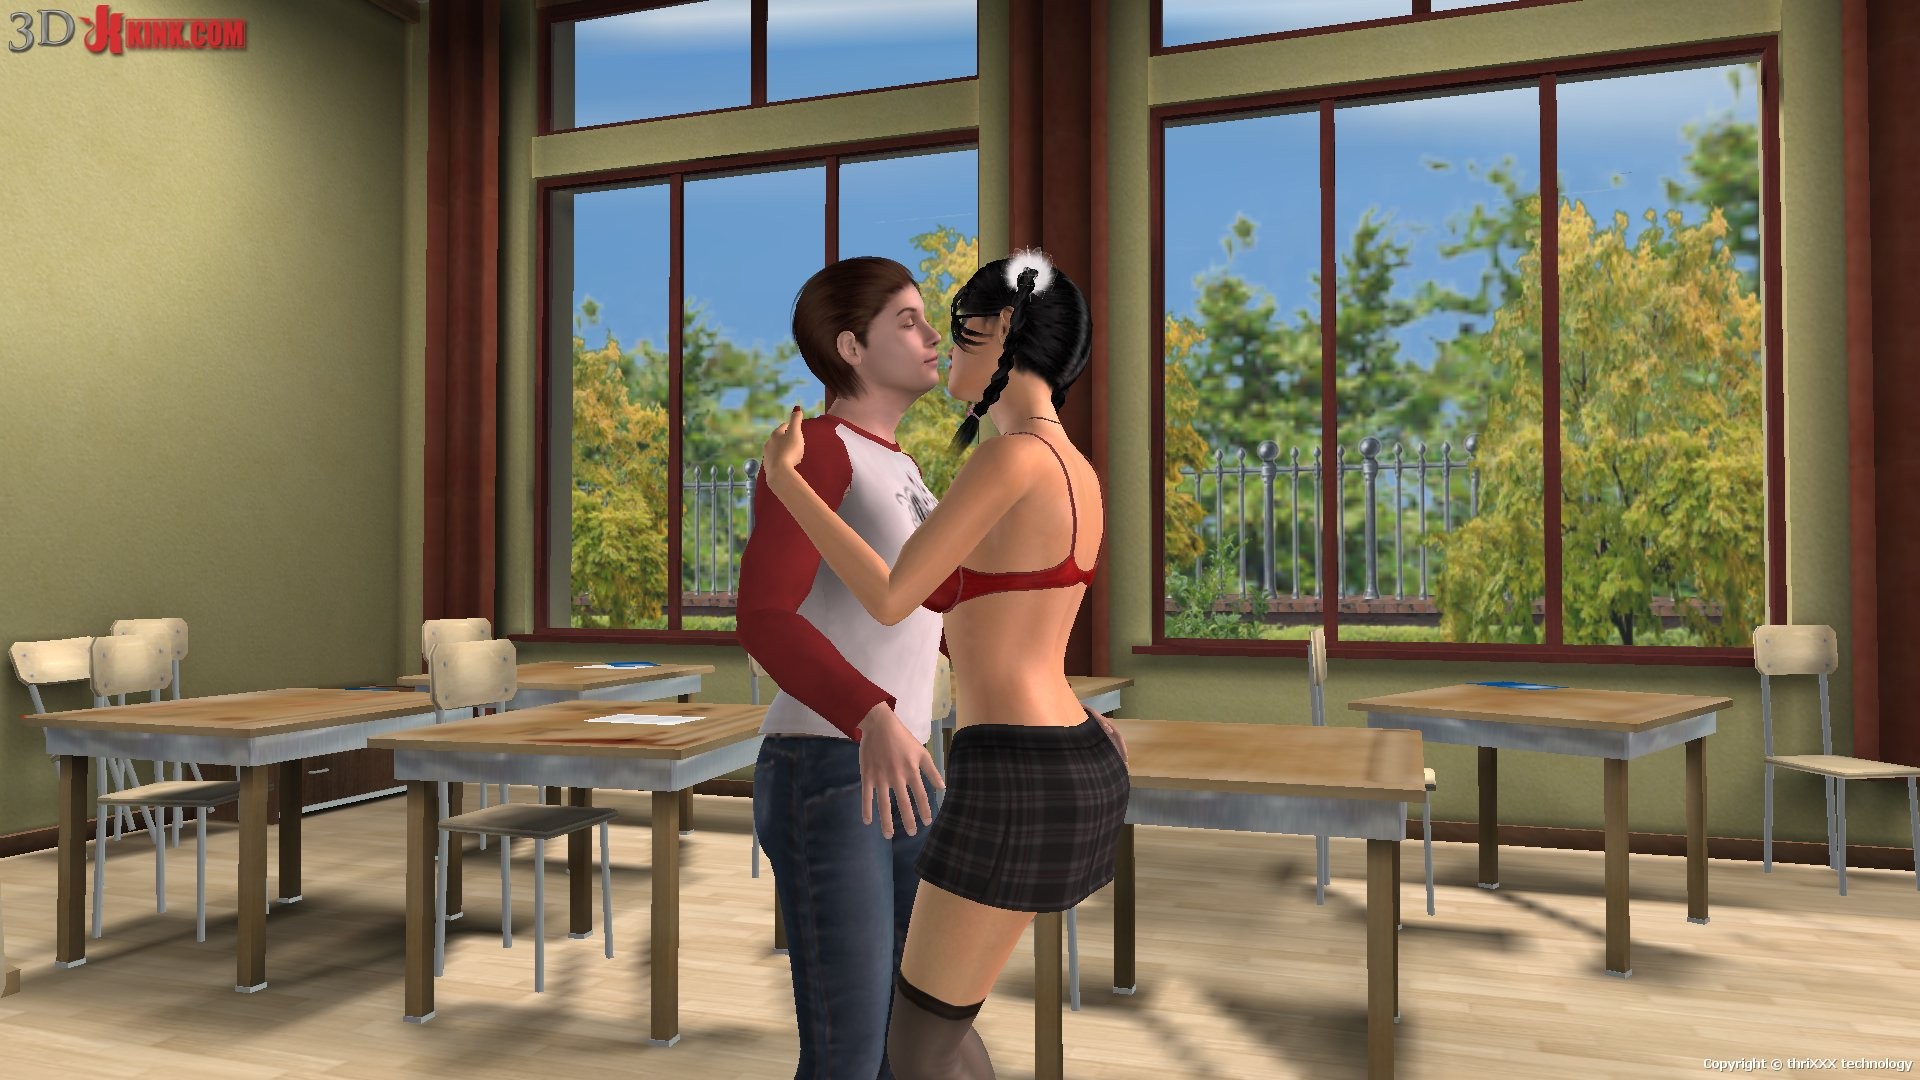 Action sexuelle bdsm chaude créée dans un jeu sexuel 3d fétichiste virtuel !
 #69605066